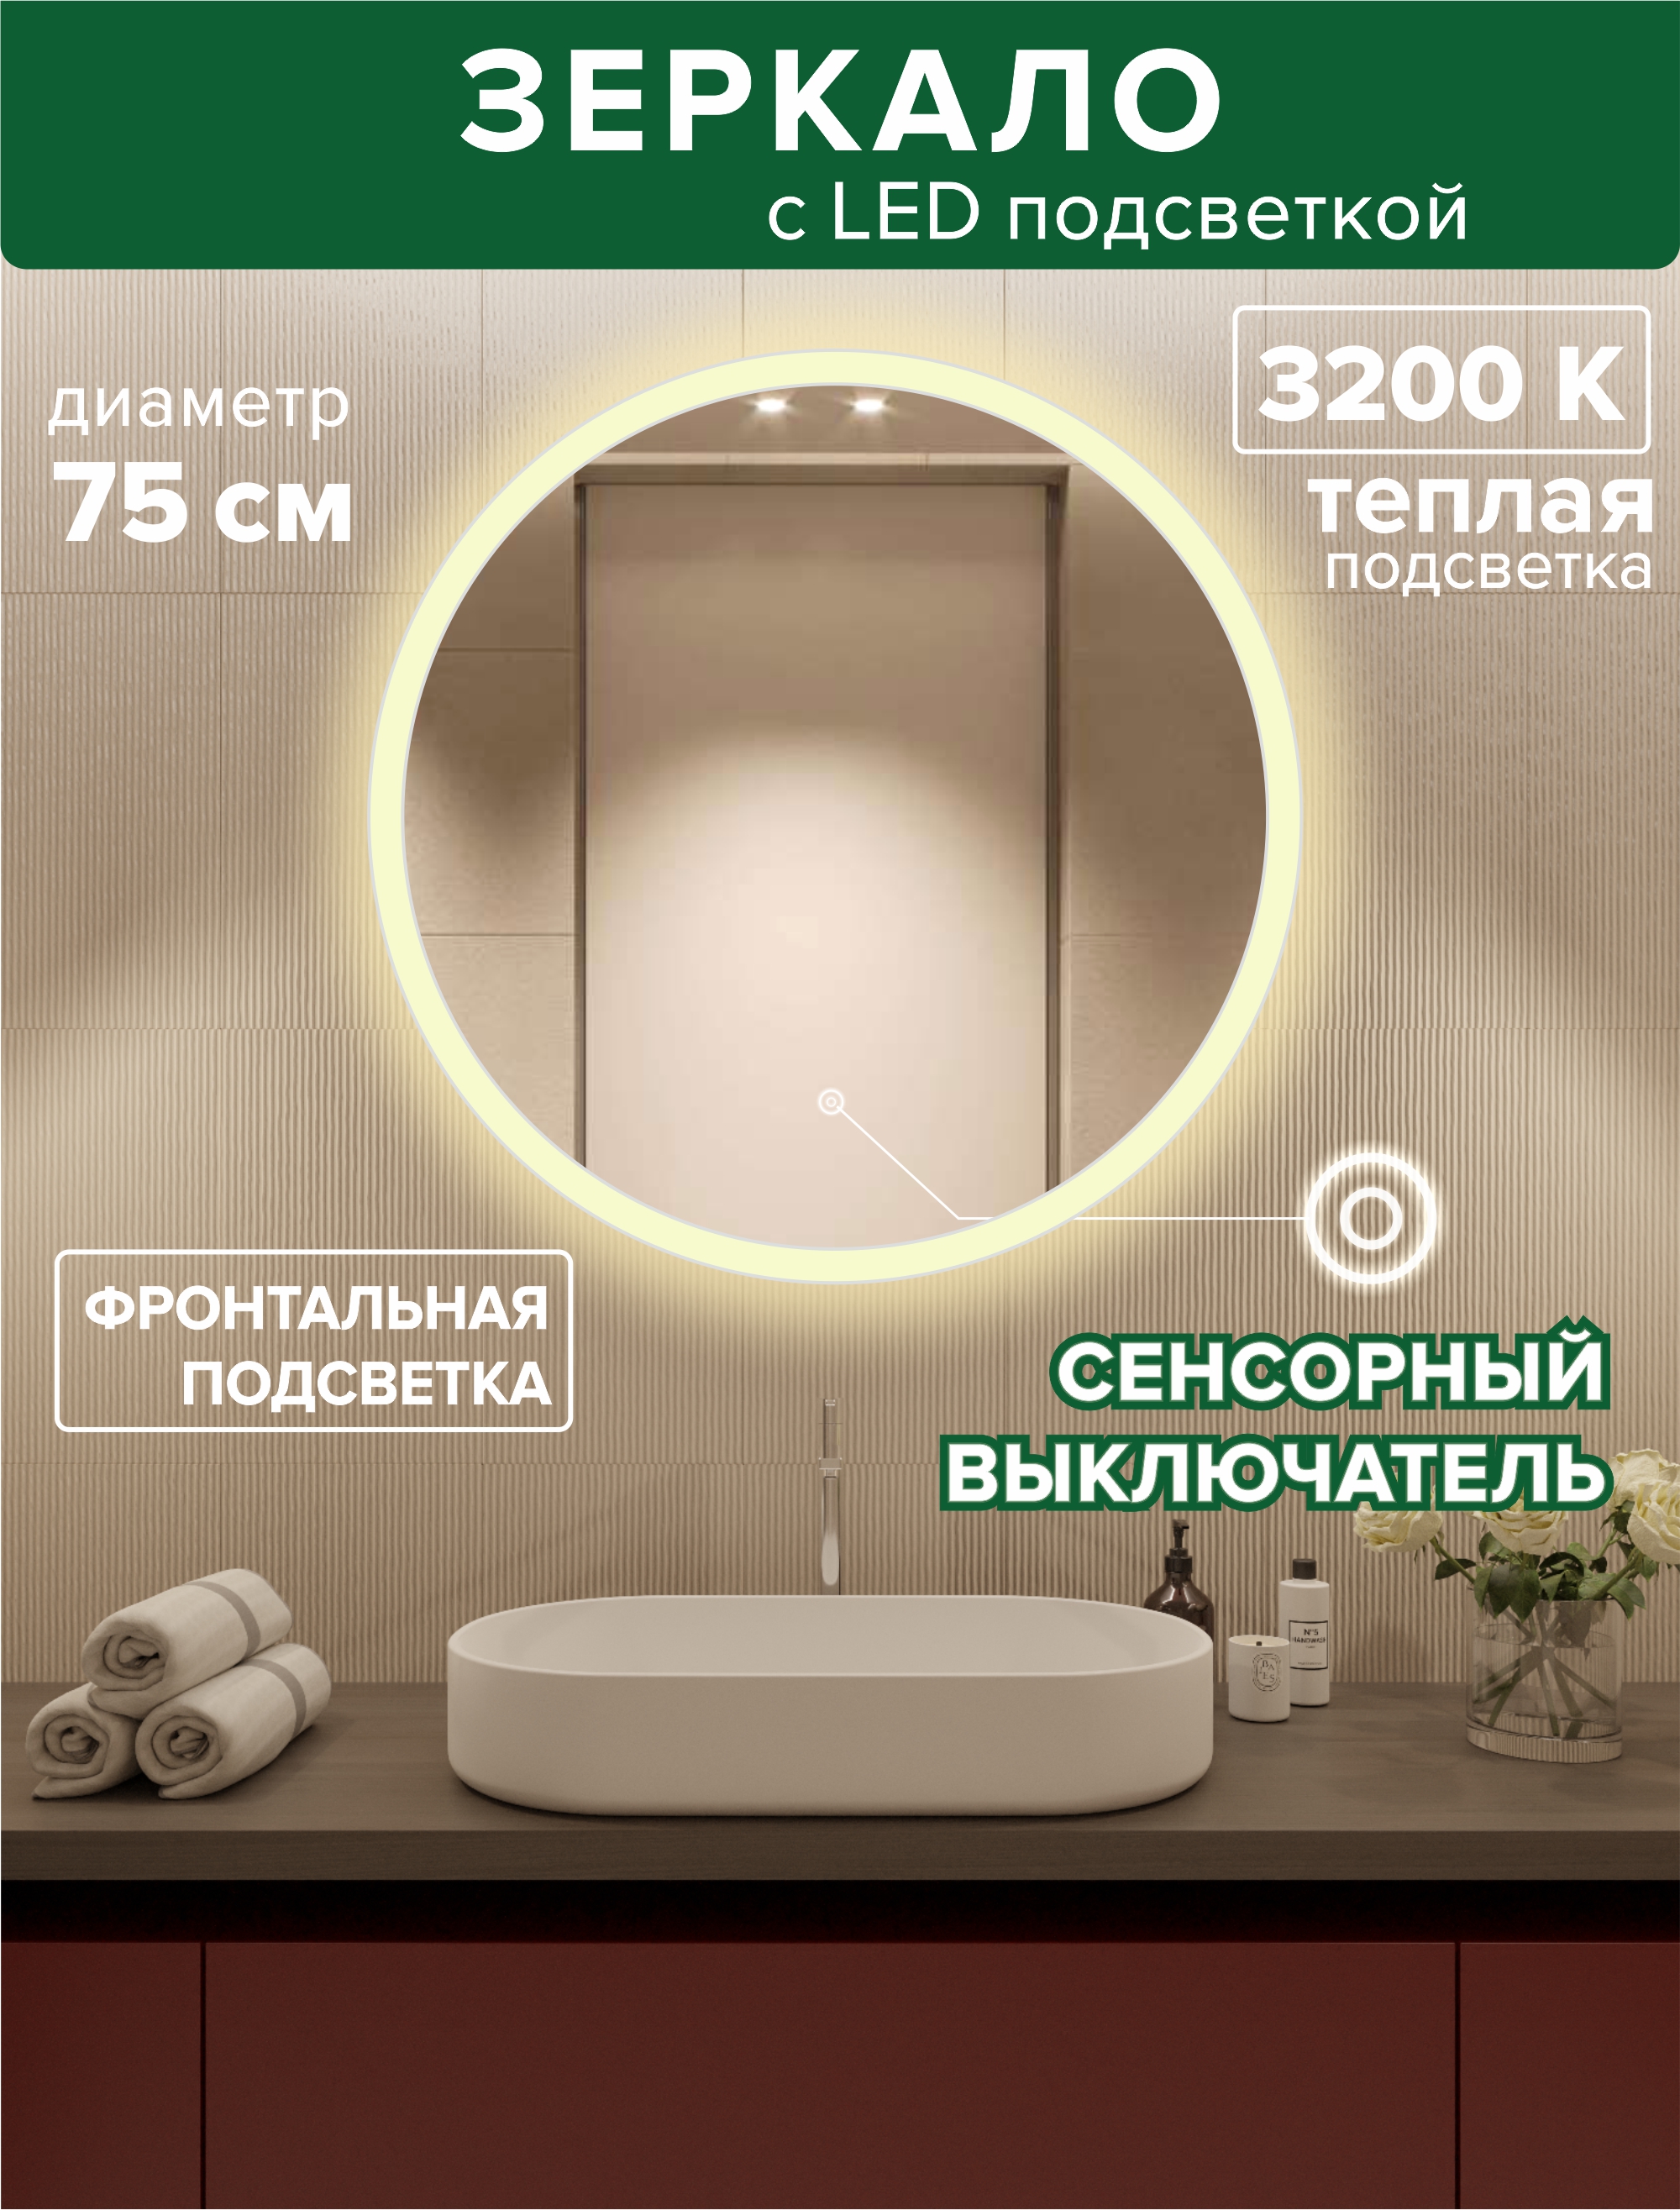 Зеркало для ванной Alfa Mirrors фронтальная теплая подсветка 3200К, круглое 75см,MSvet-75t led pls 100 10m 240v ww c f ww белая теплая прозр пров белый теплый flash ip 54 соединяемая